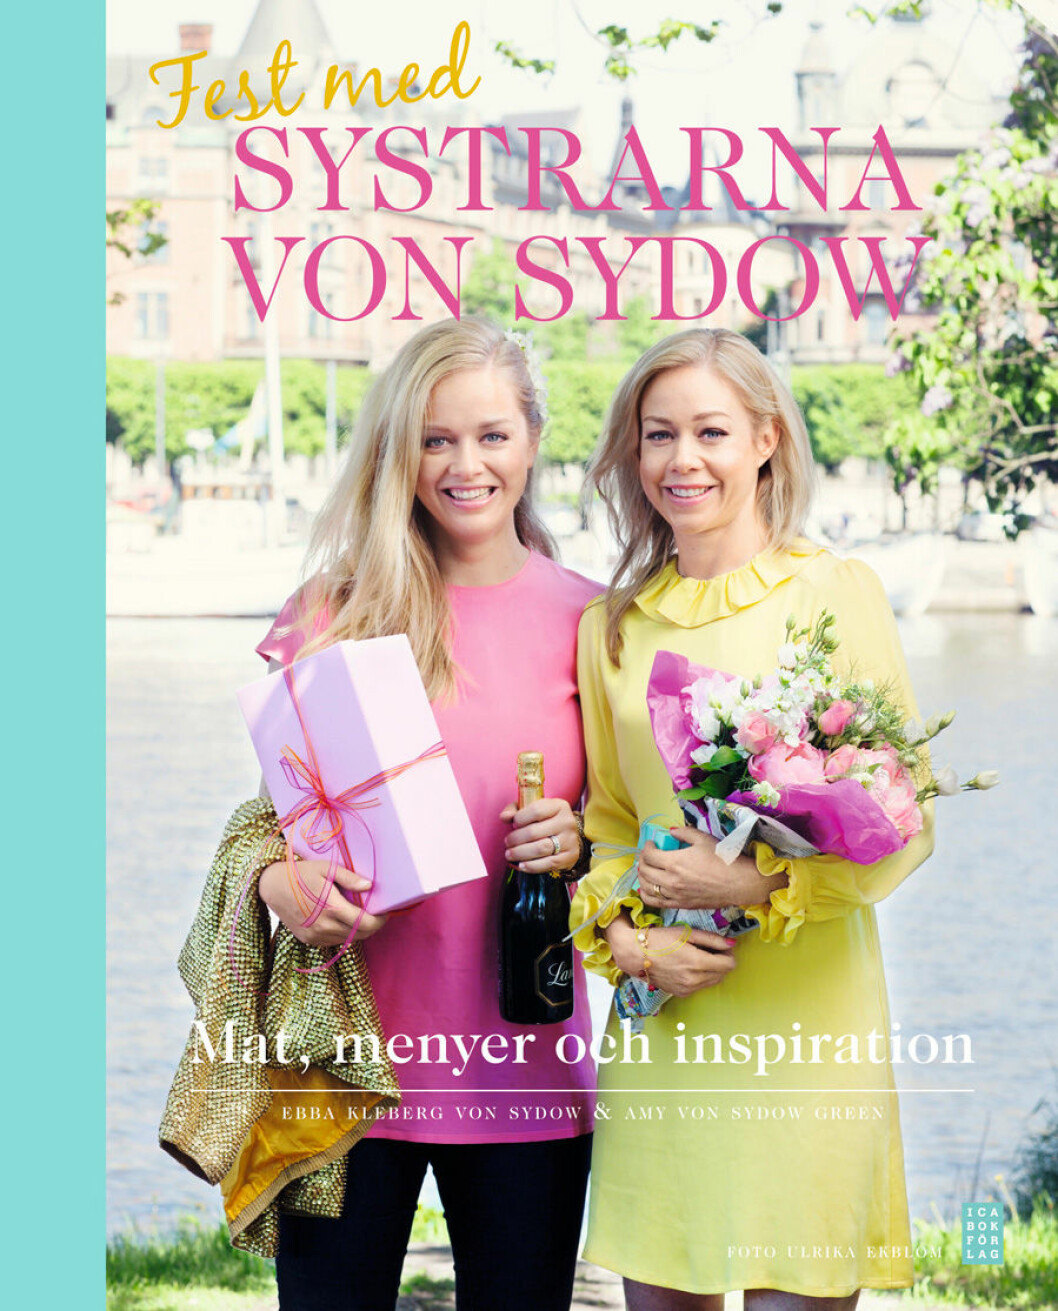 Boken "Fest med systrarna von Sydow".